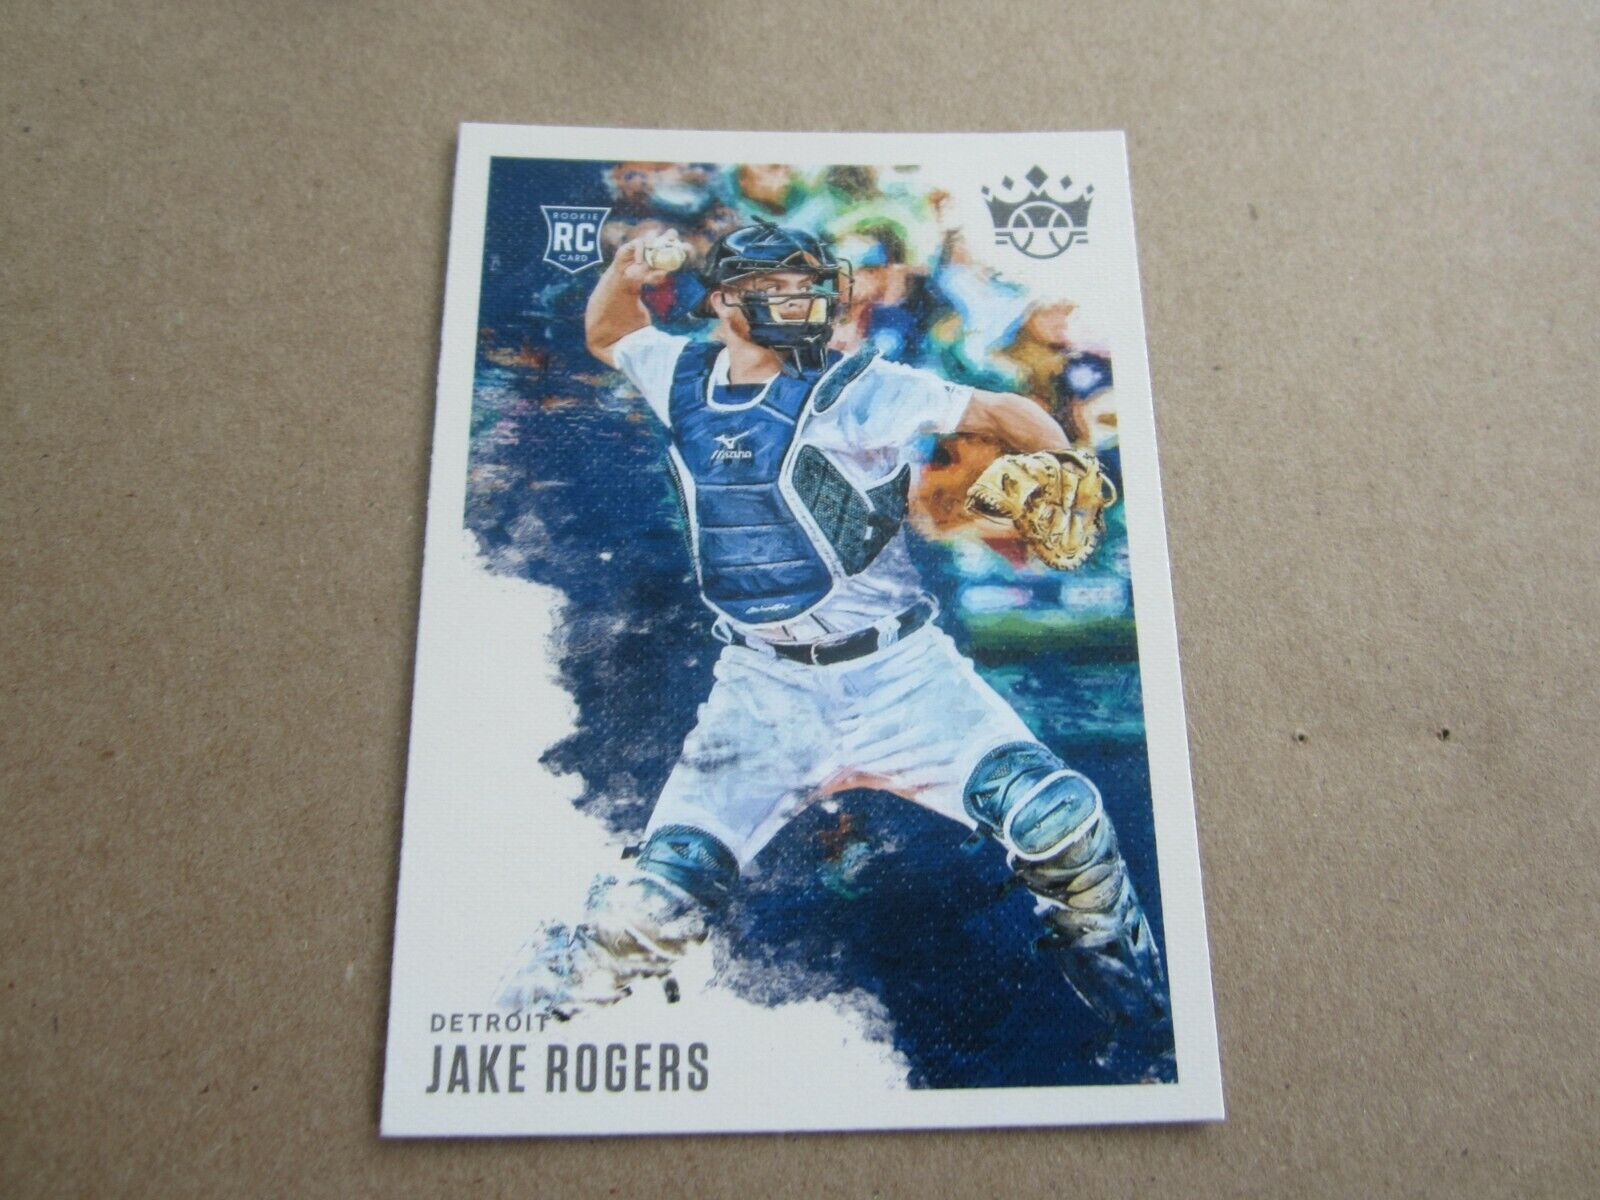  2020 PANINI DIAMOND KINGS MLB ROOKIE CARD JAKE ROGERS TIGERS #75